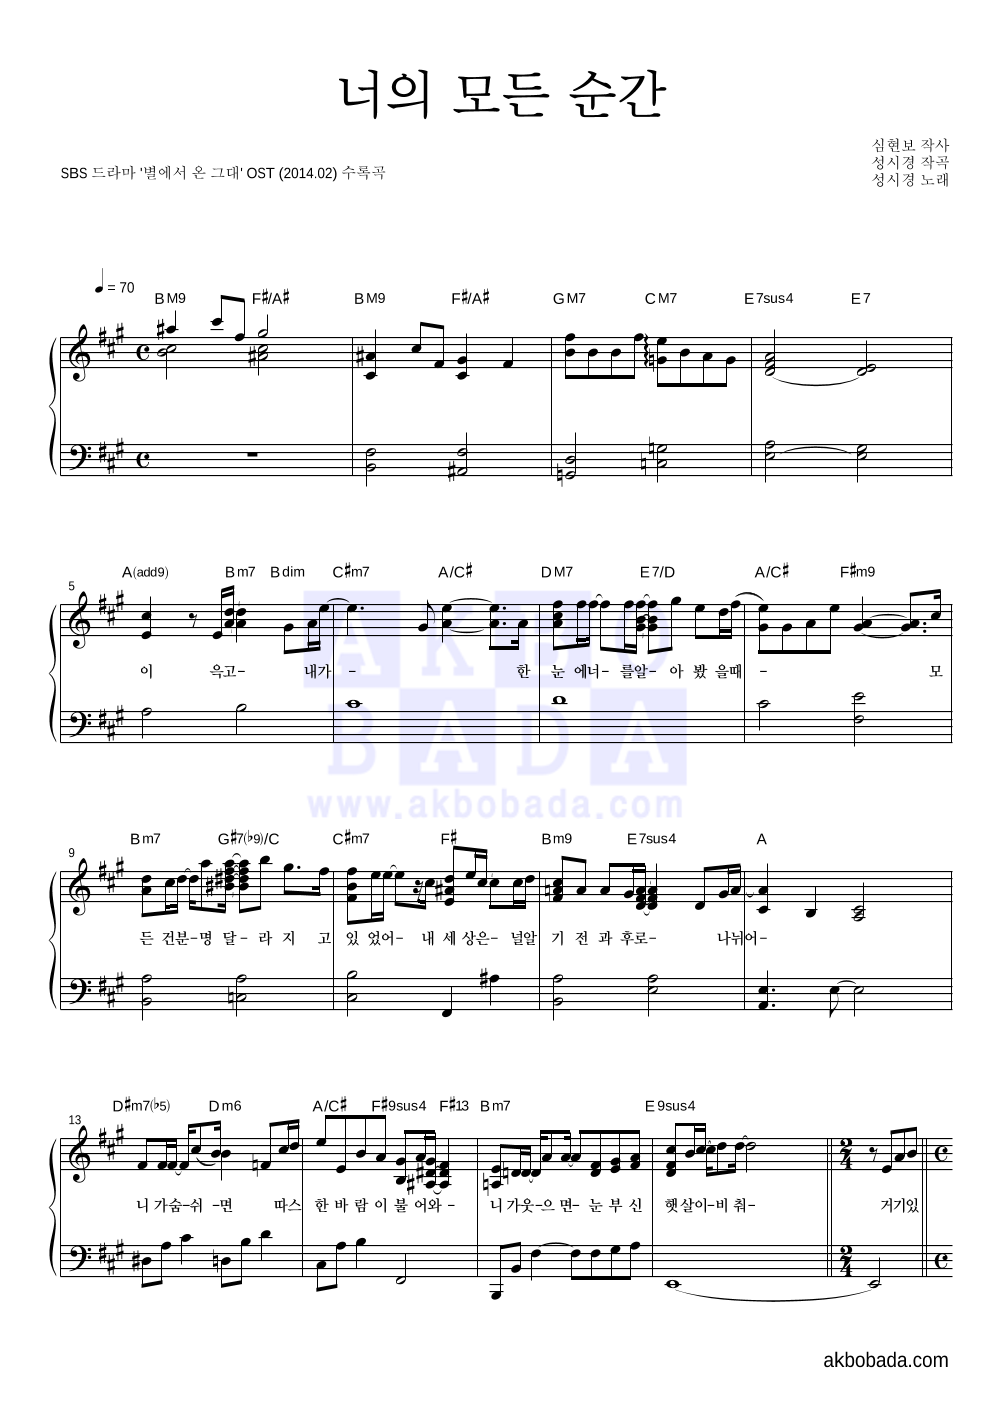 성시경 - 너의 모든 순간 (Piano Ver.) 피아노 2단 악보 